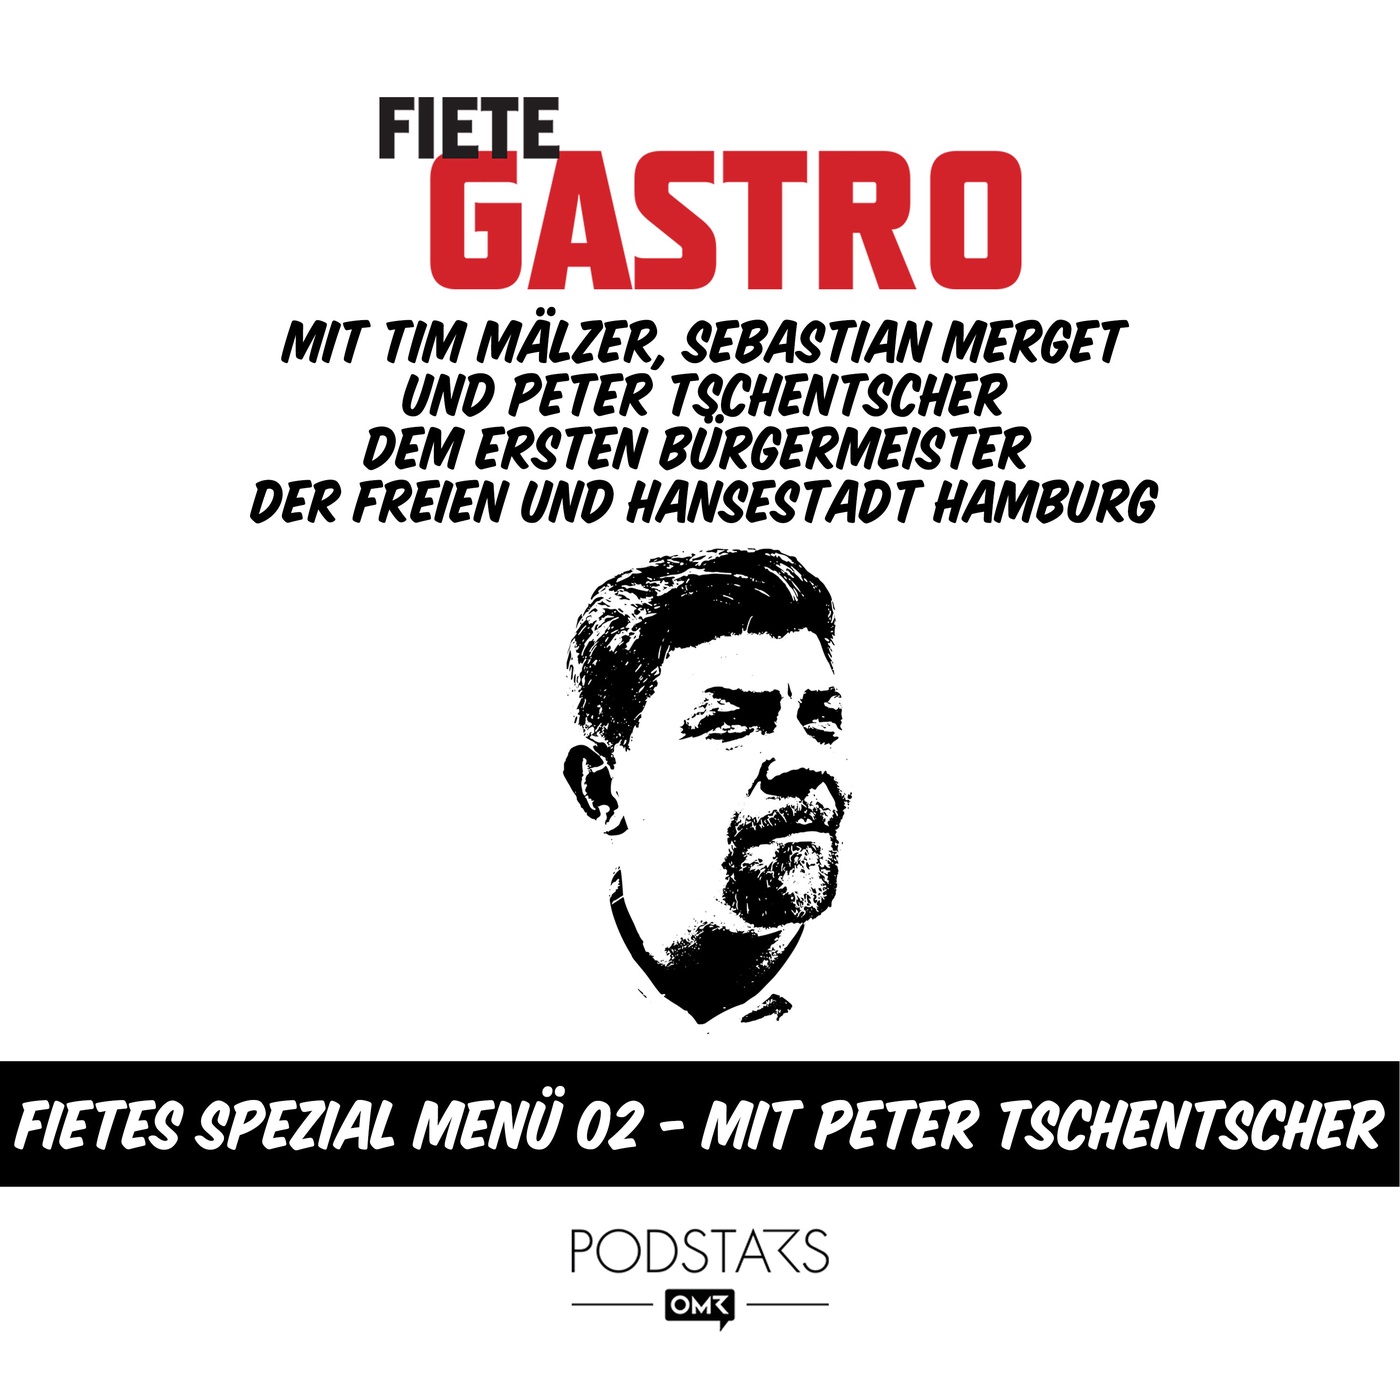 Fietes Spezial Menü 02 - mit Peter Tschentscher